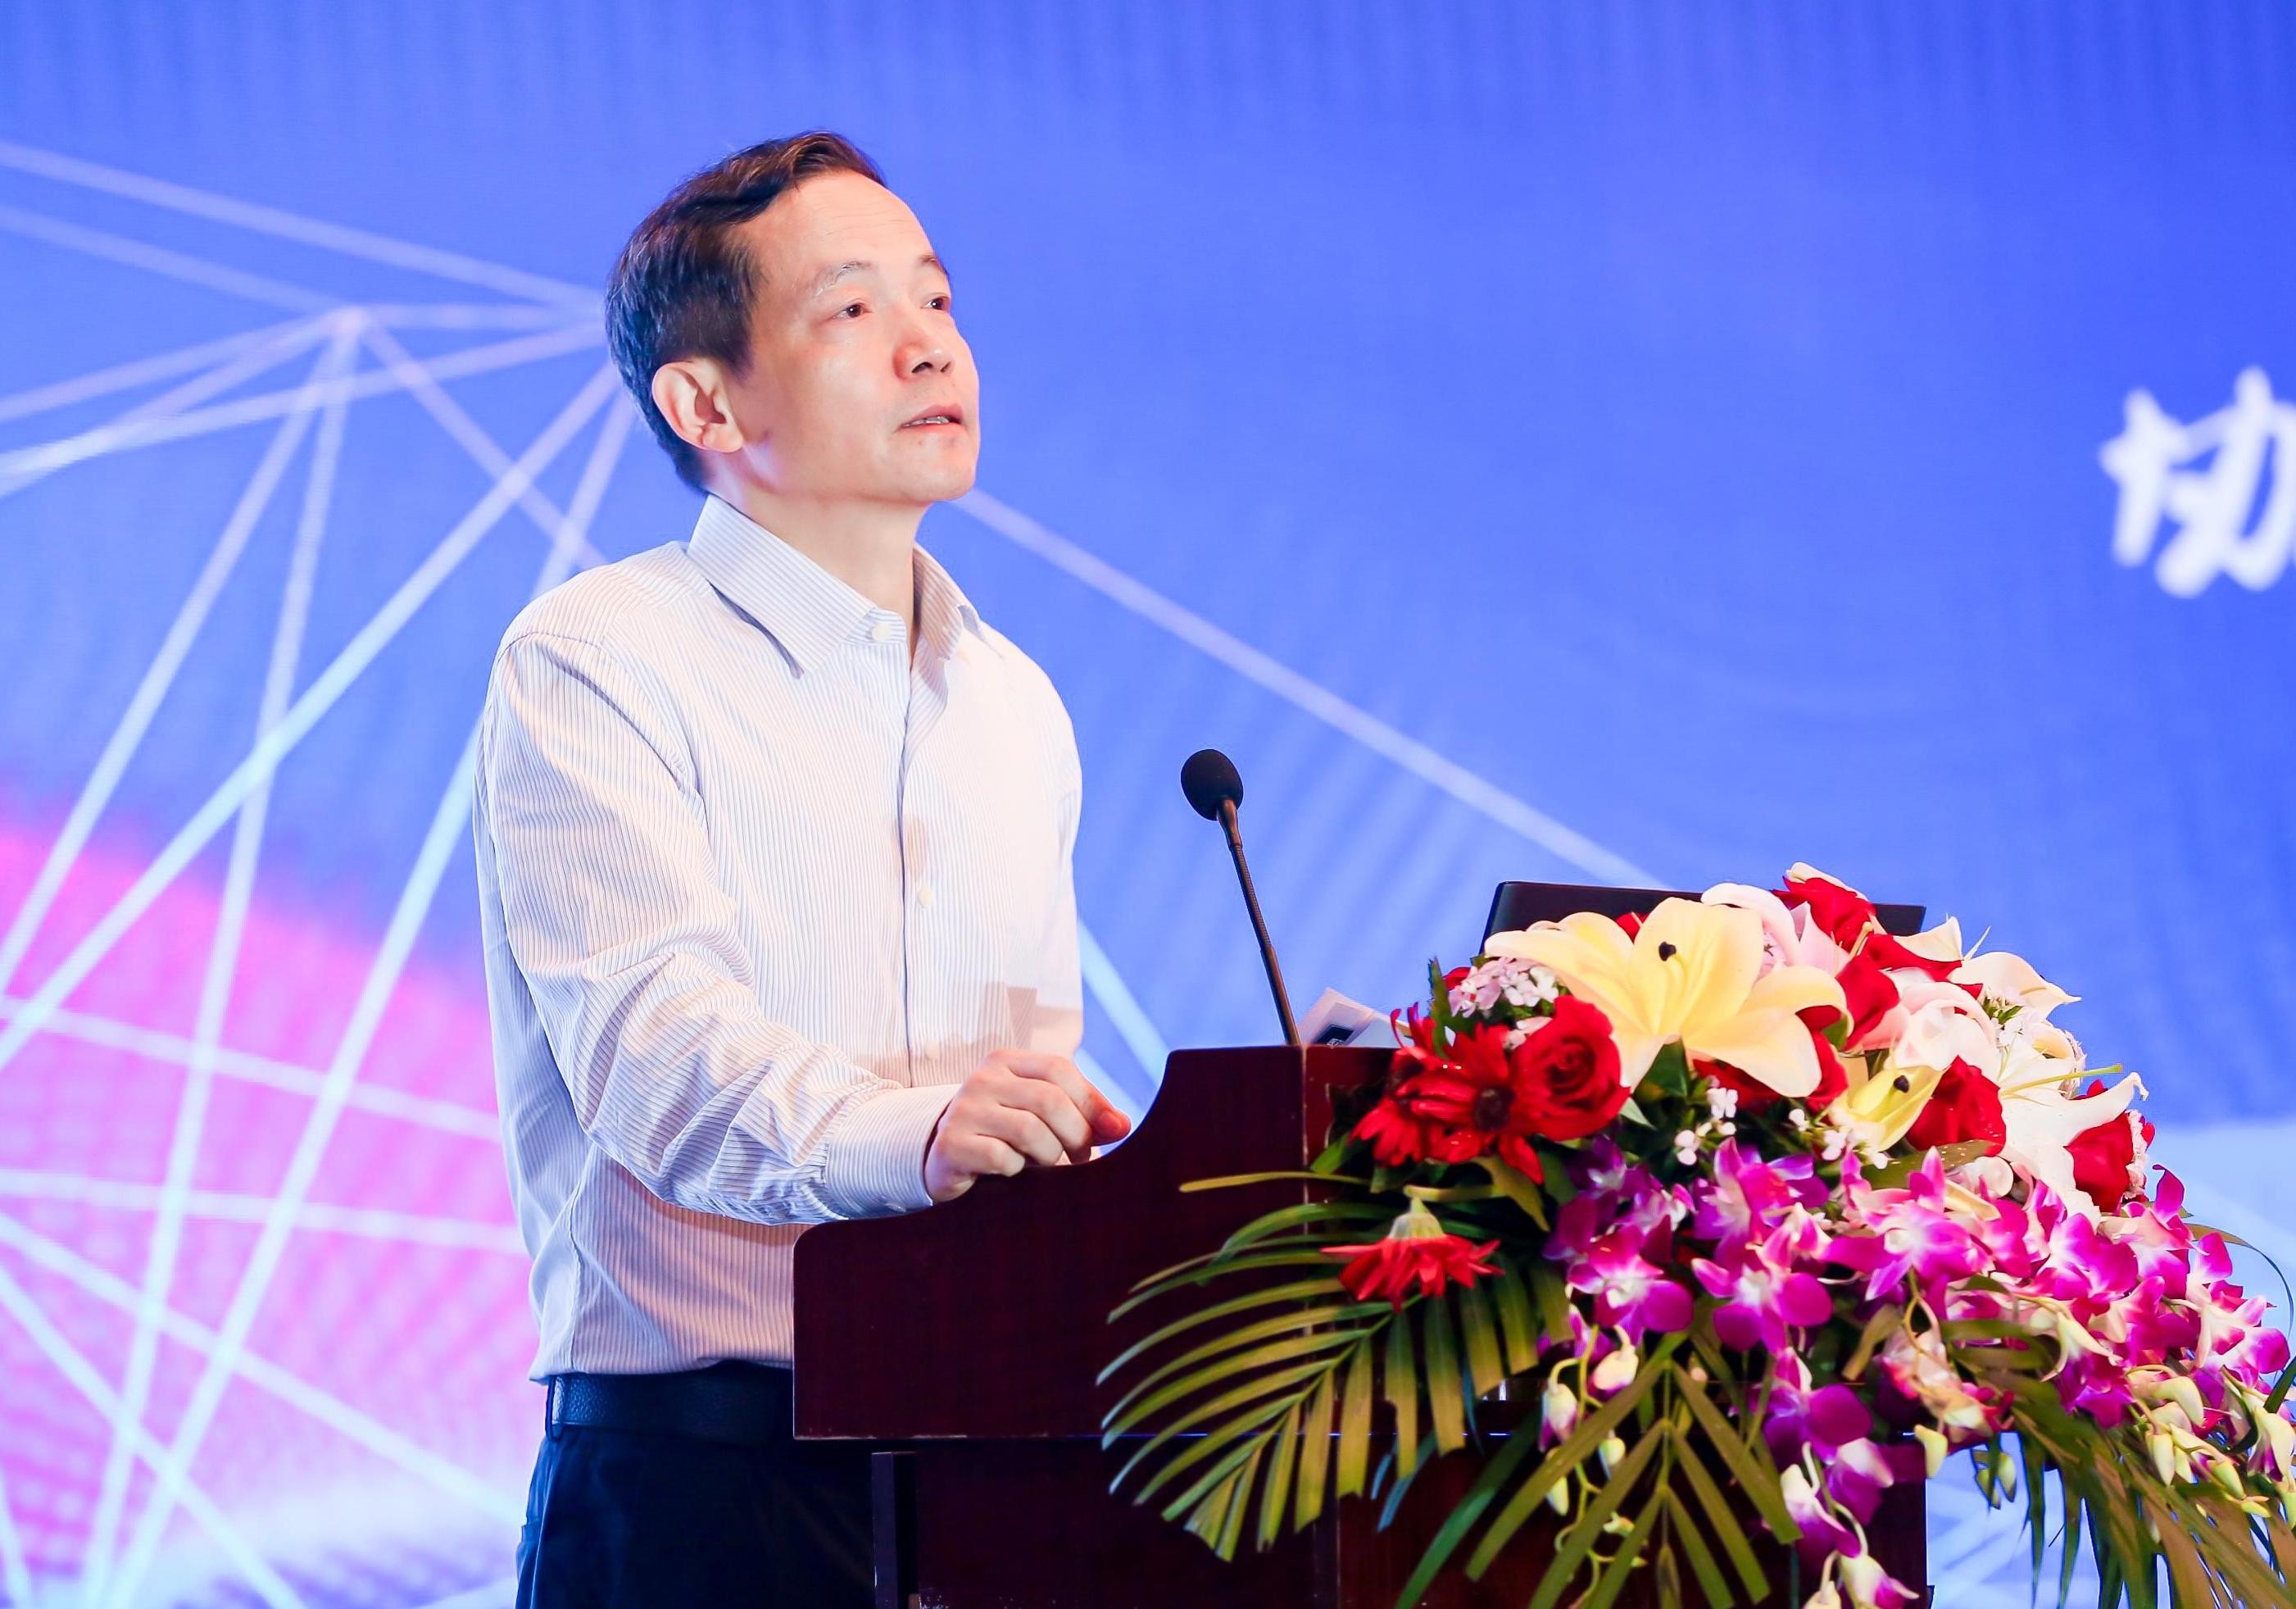 协同共建招标采购全流程数字化实践应用研讨会在南京召开